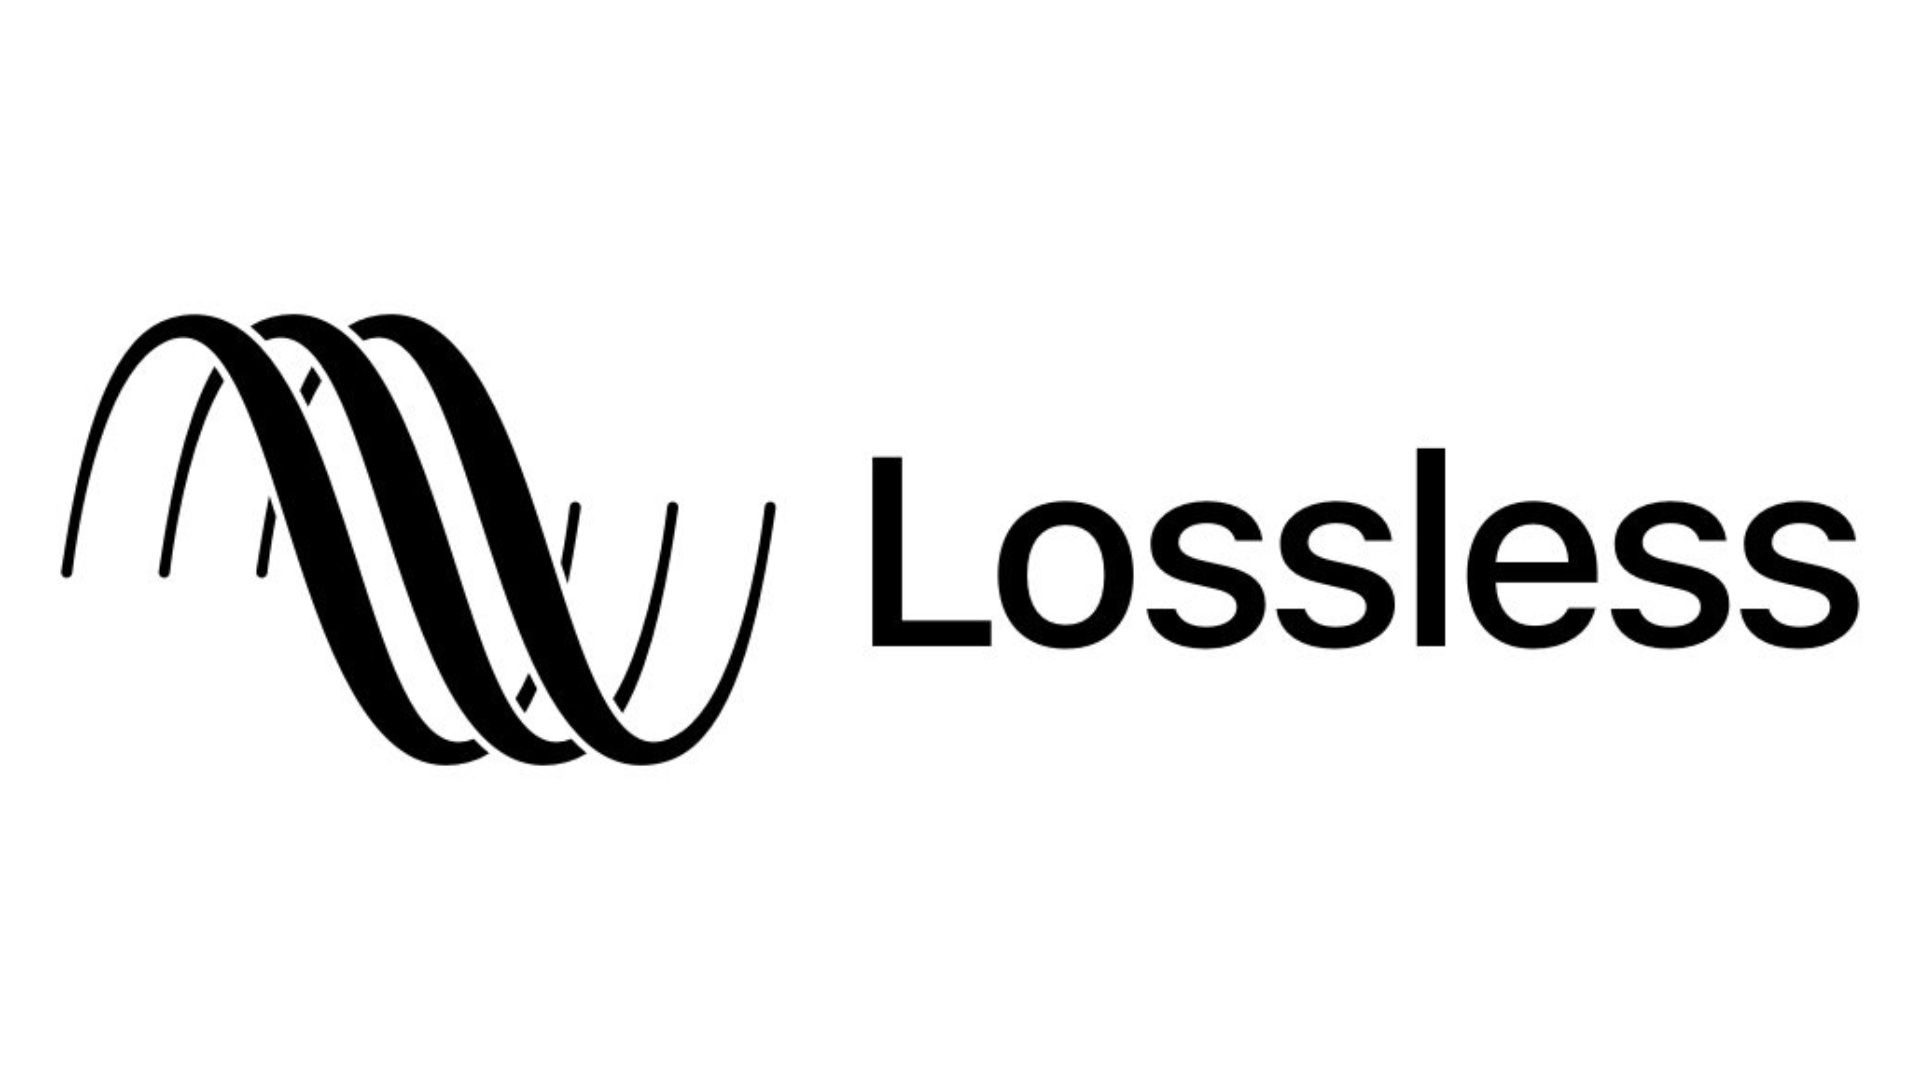 Nhạc Lossless là gì? 1